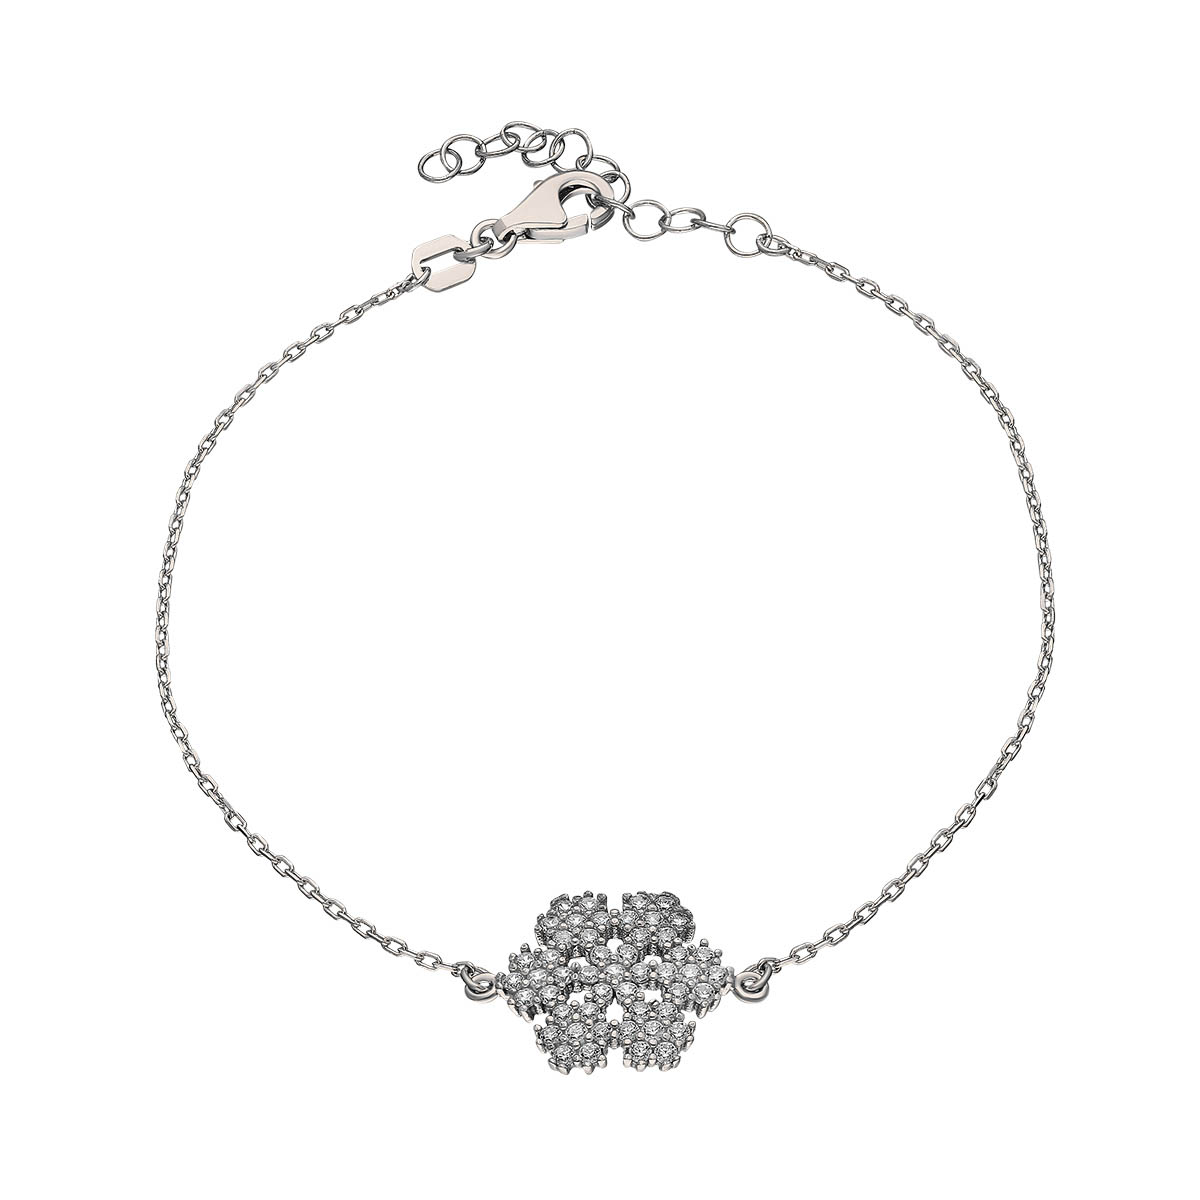 Silver Bracelet Snowflake Design 925 Sterling